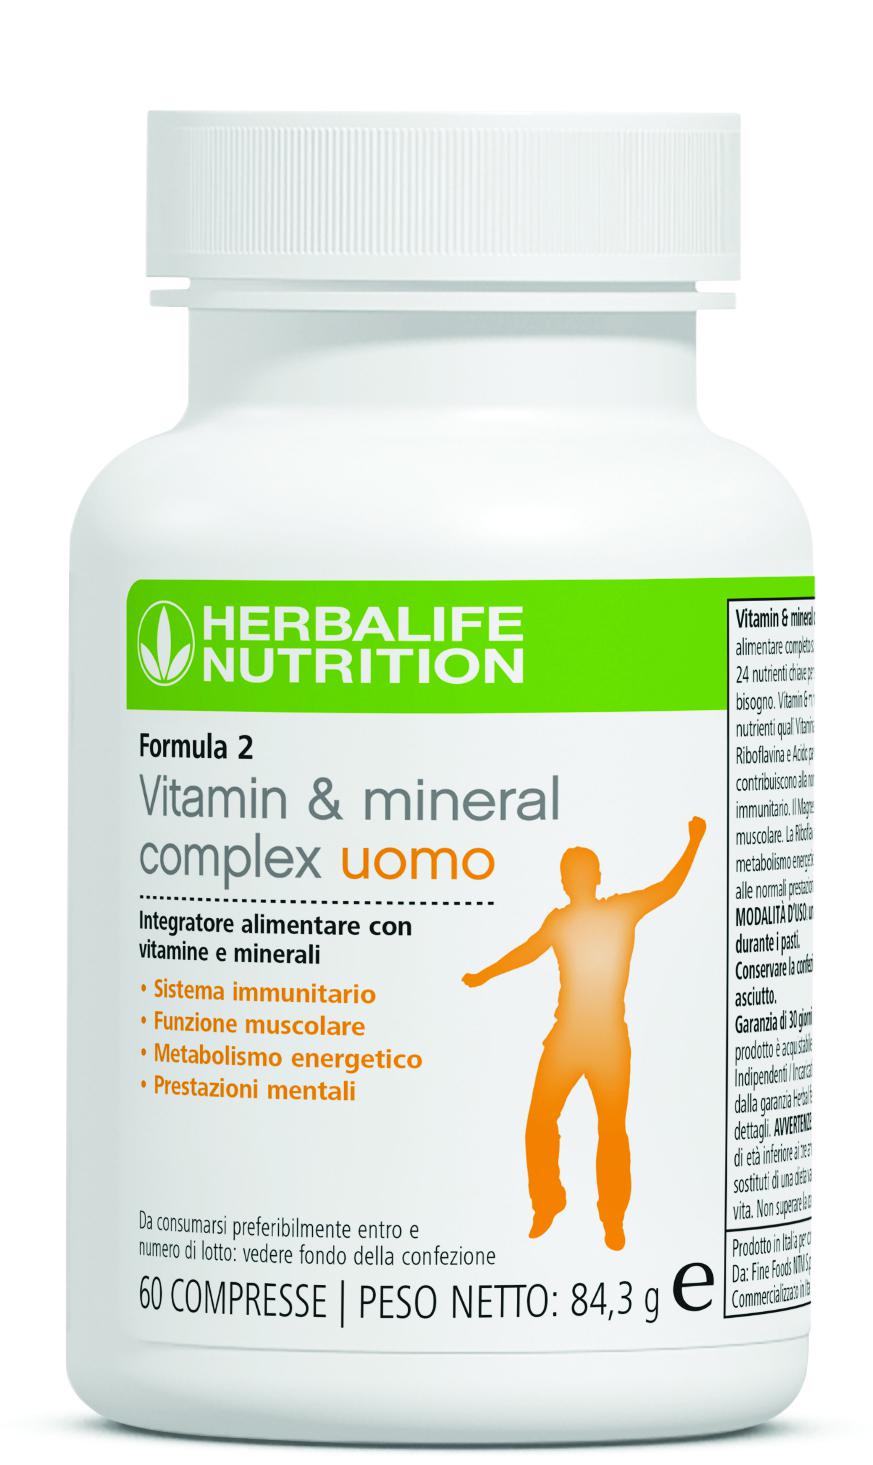 Formula 2 Vitamin & mineral complex uomo